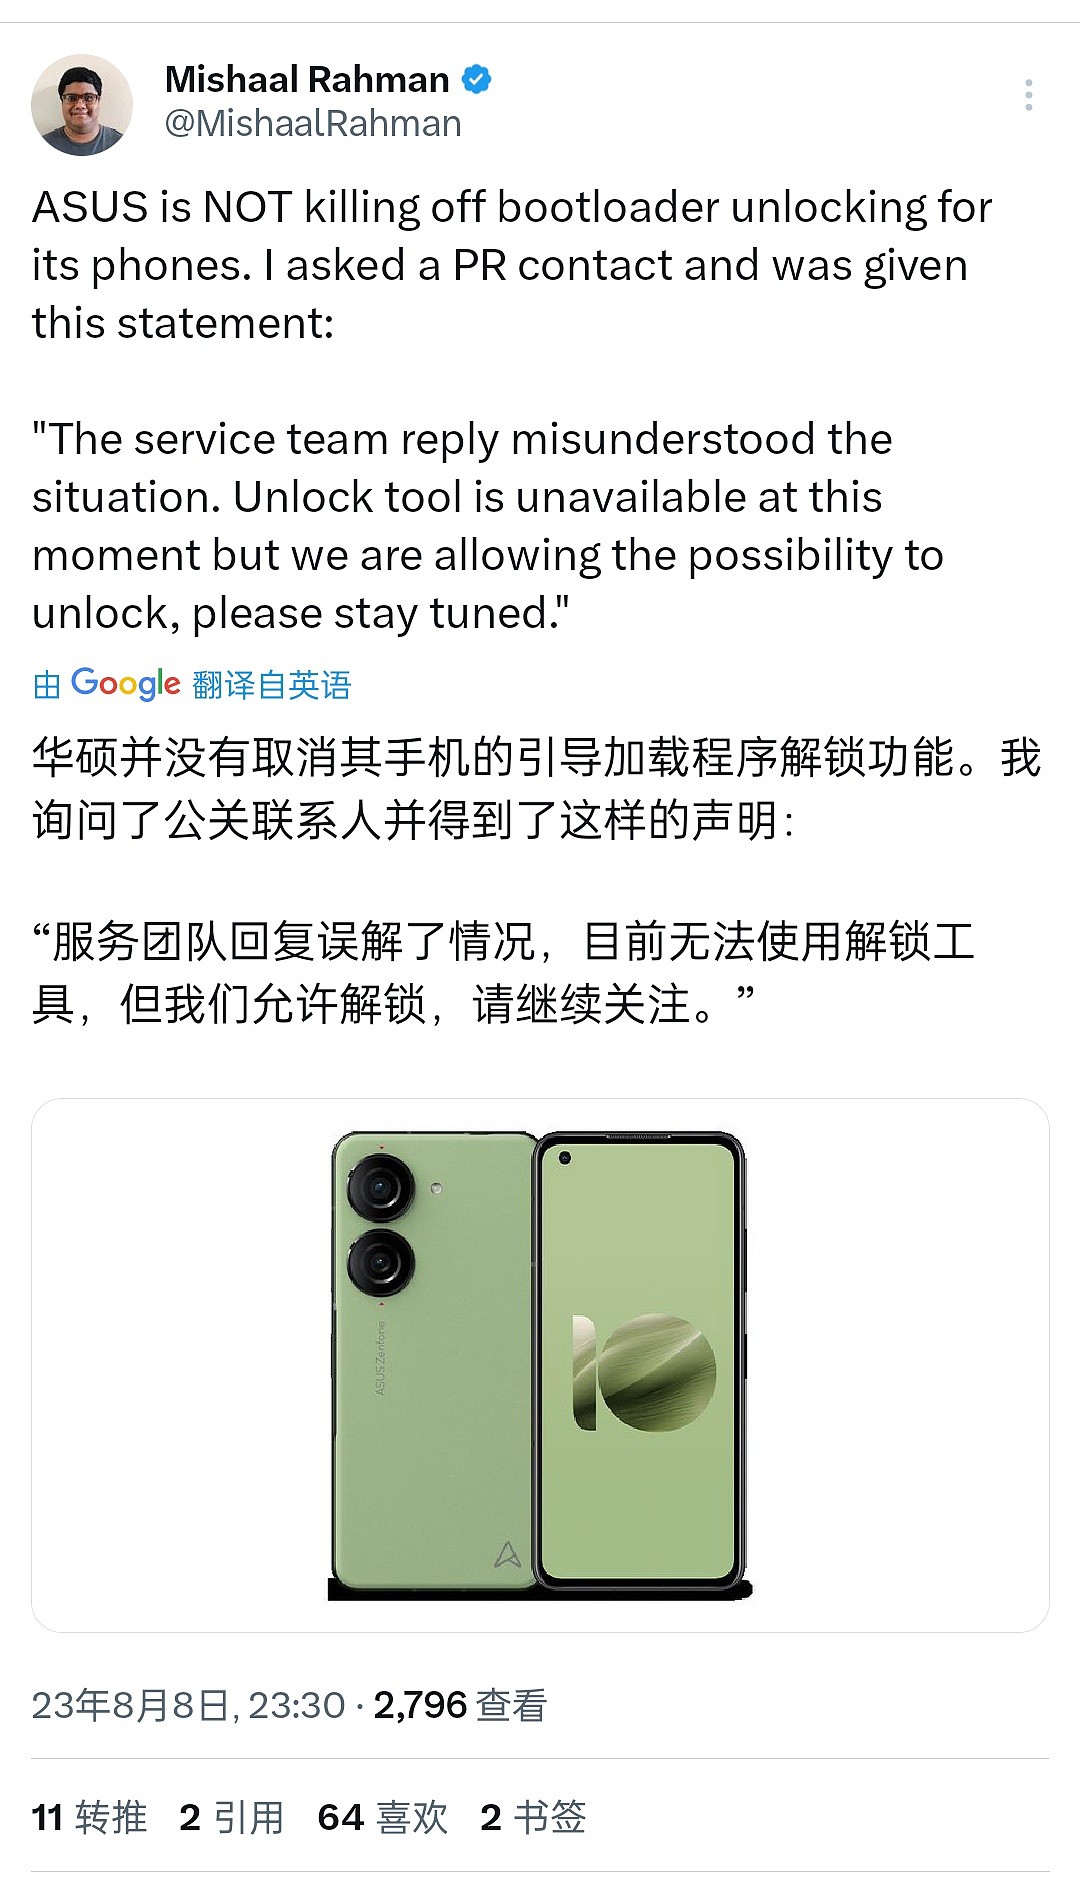 华硕否认禁用 Zenfone 手机的 Bootloader 解锁，称只是暂时维护 - 1